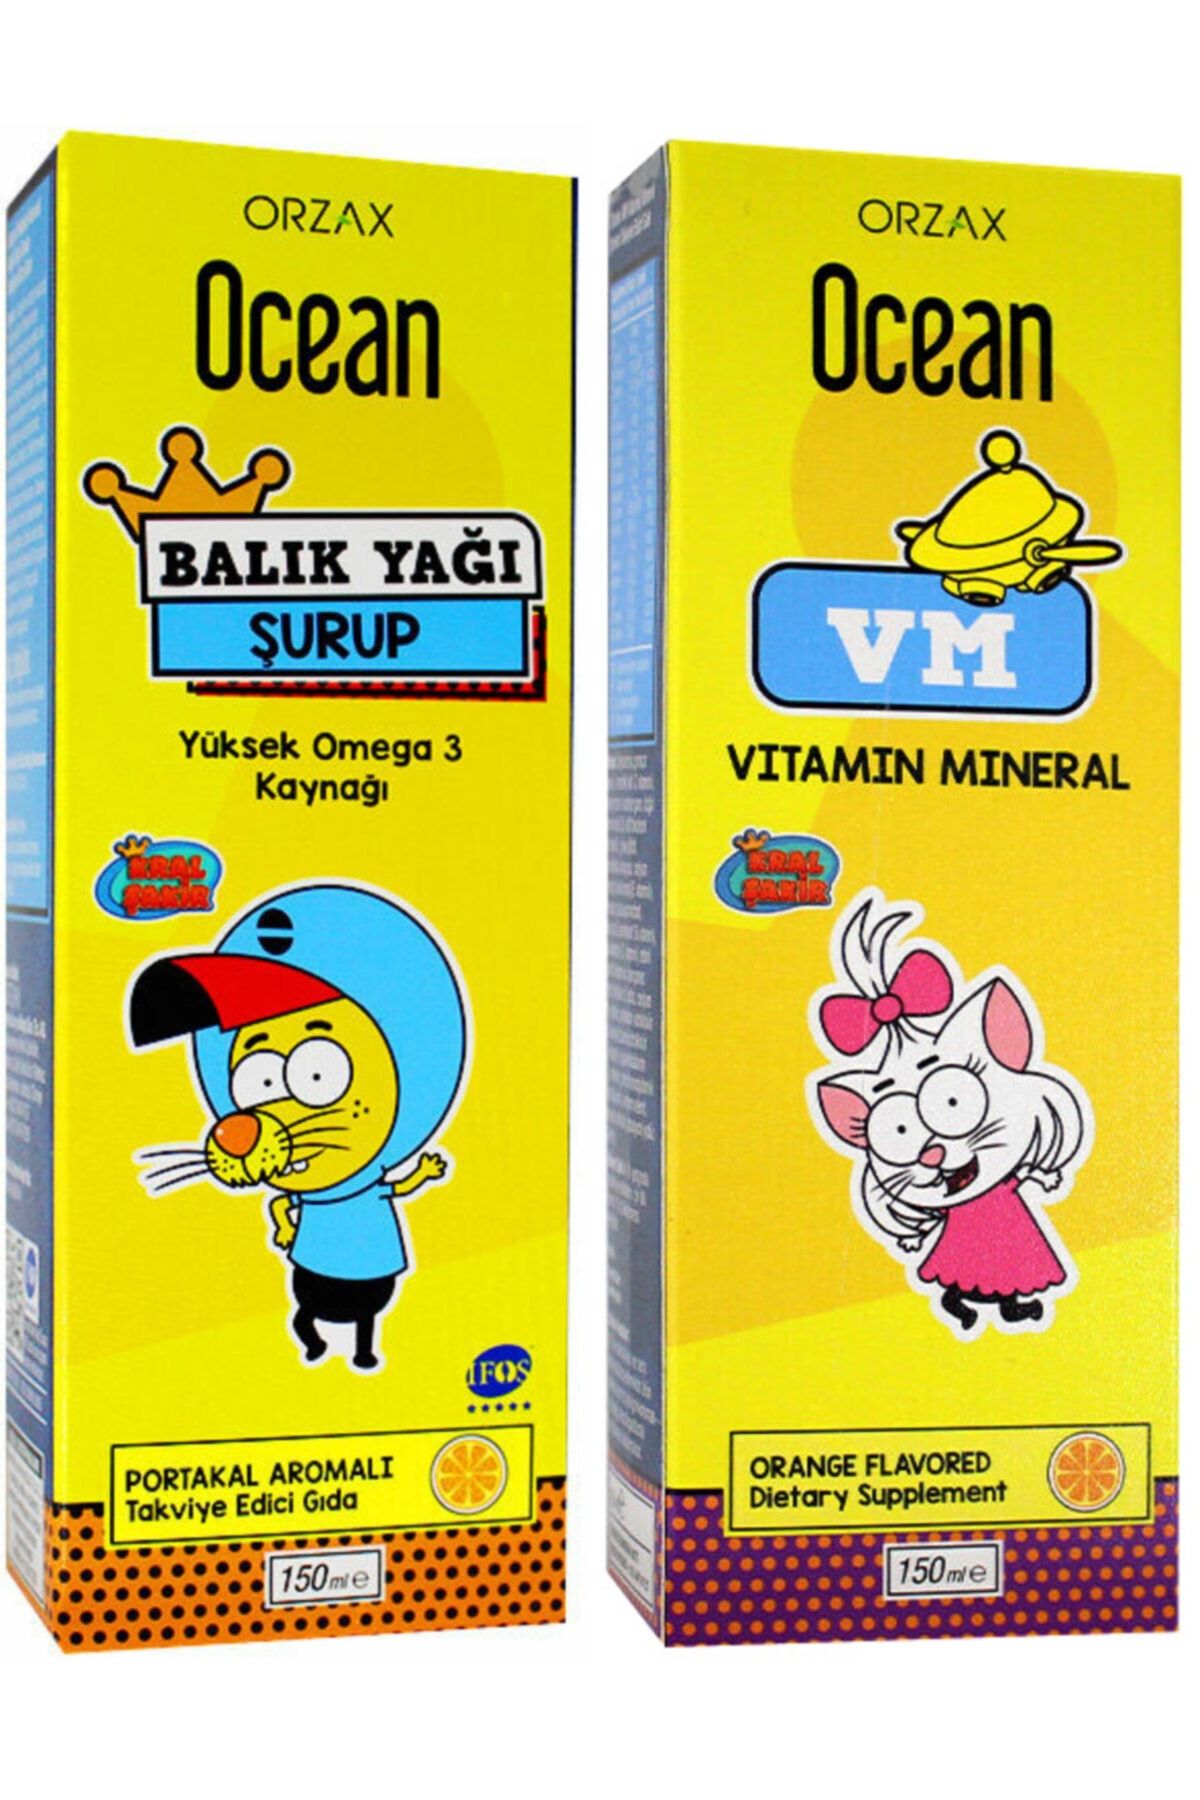 Ocean Ocean Balık Yağı Şurup Portakal Aromalı 150ml + Ocean Vitamin Mineral Şurup 150ml Avantaj Paketi